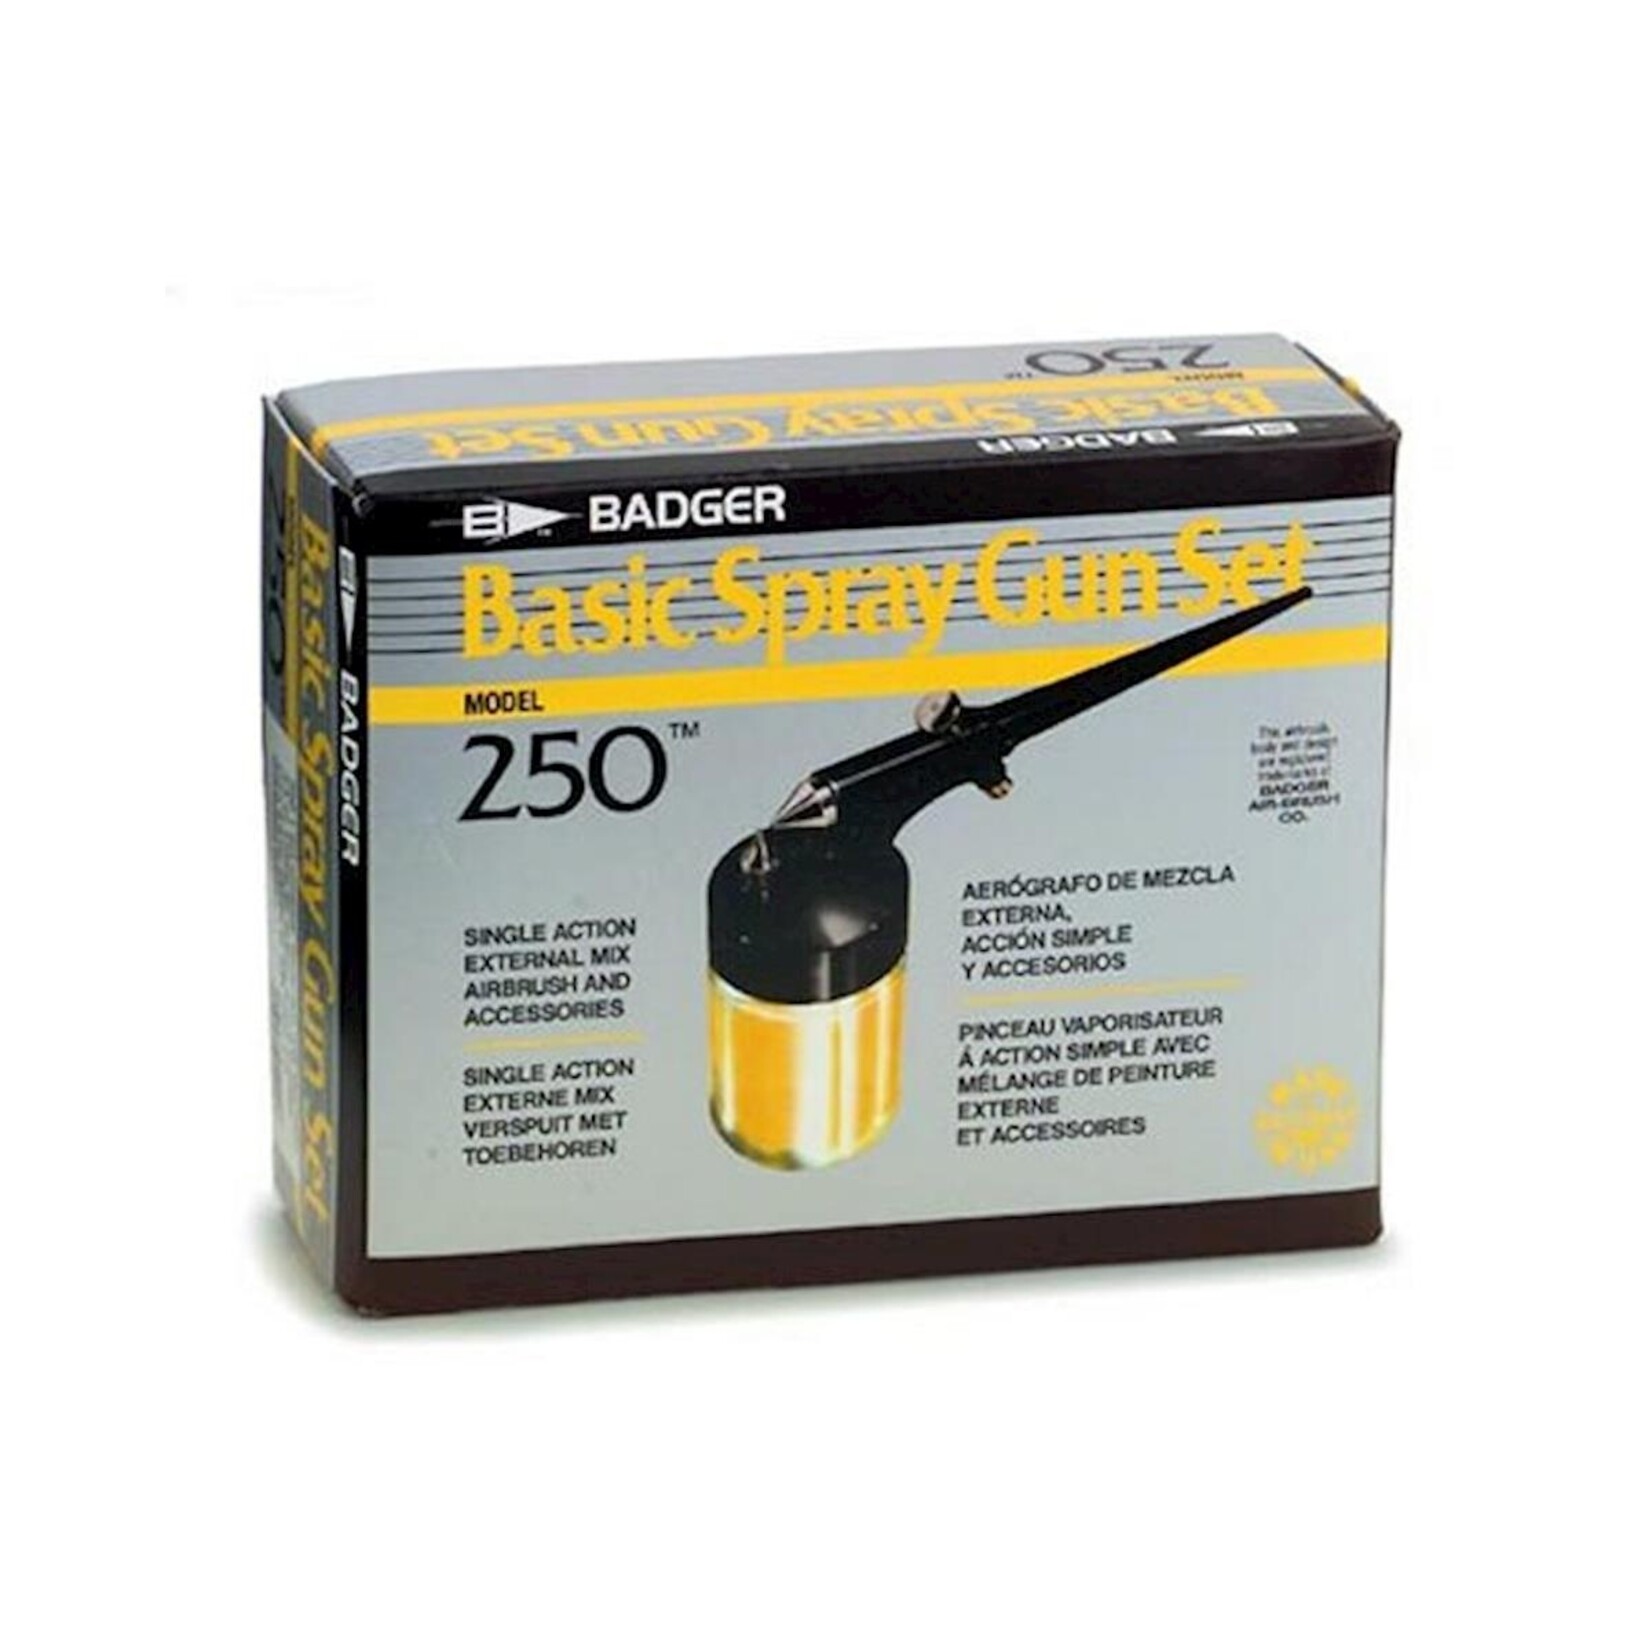 Badger Air-Brush Co. Badger Air-Brush Co. 250 Spray Gun Basic Set #250-1